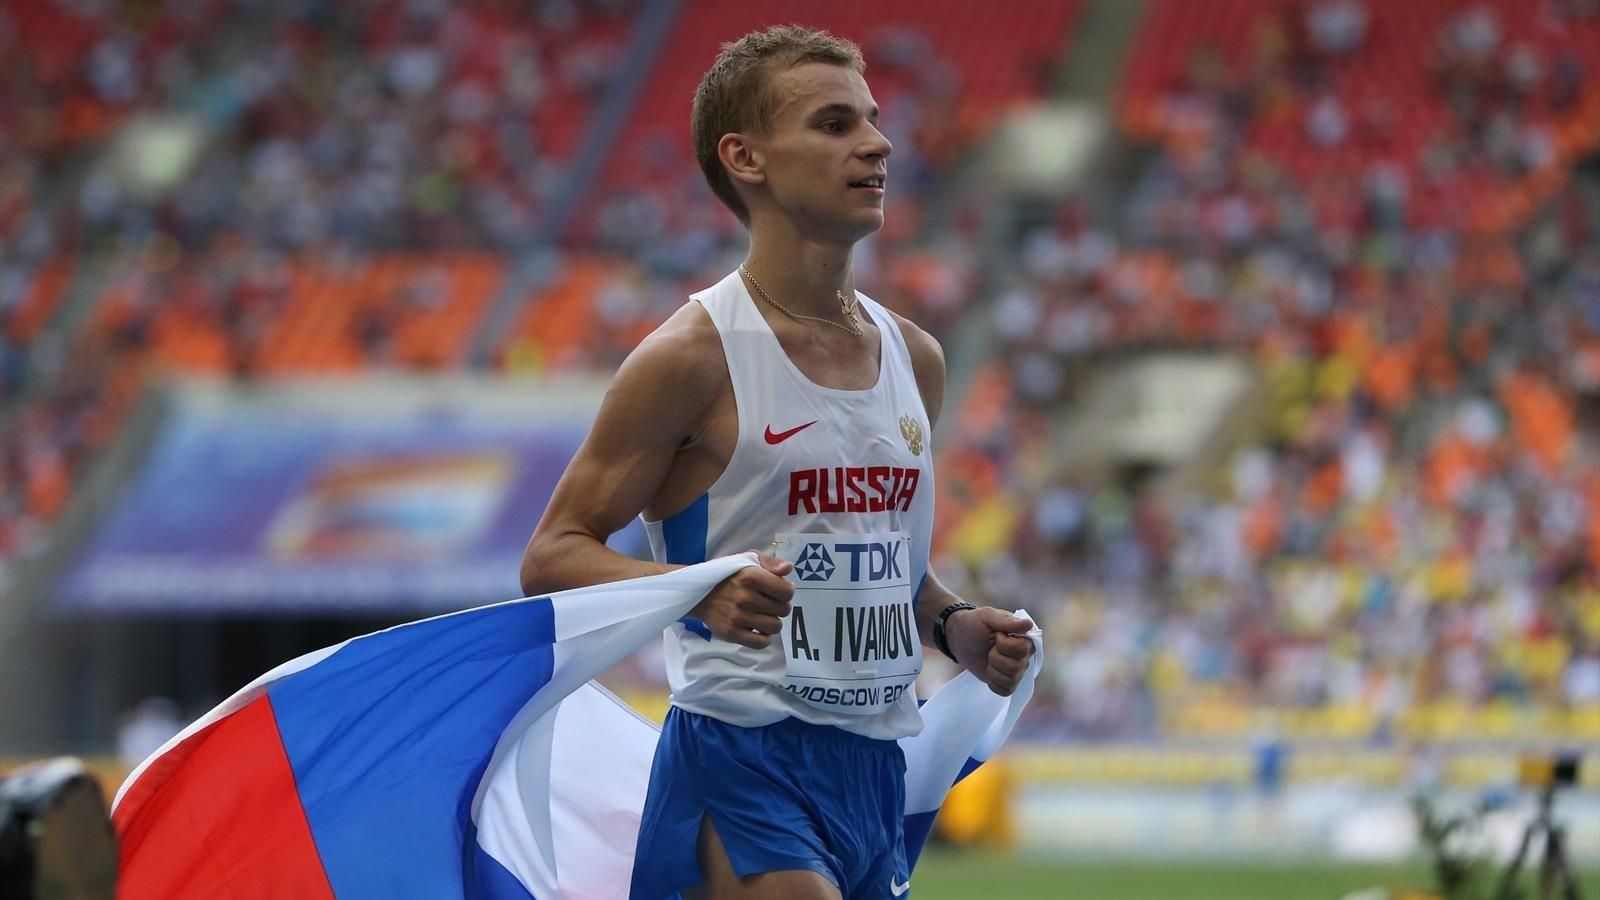 Український легкоатлет може отримати медаль чемпіонату Європи через дискваліфікацію росіянина